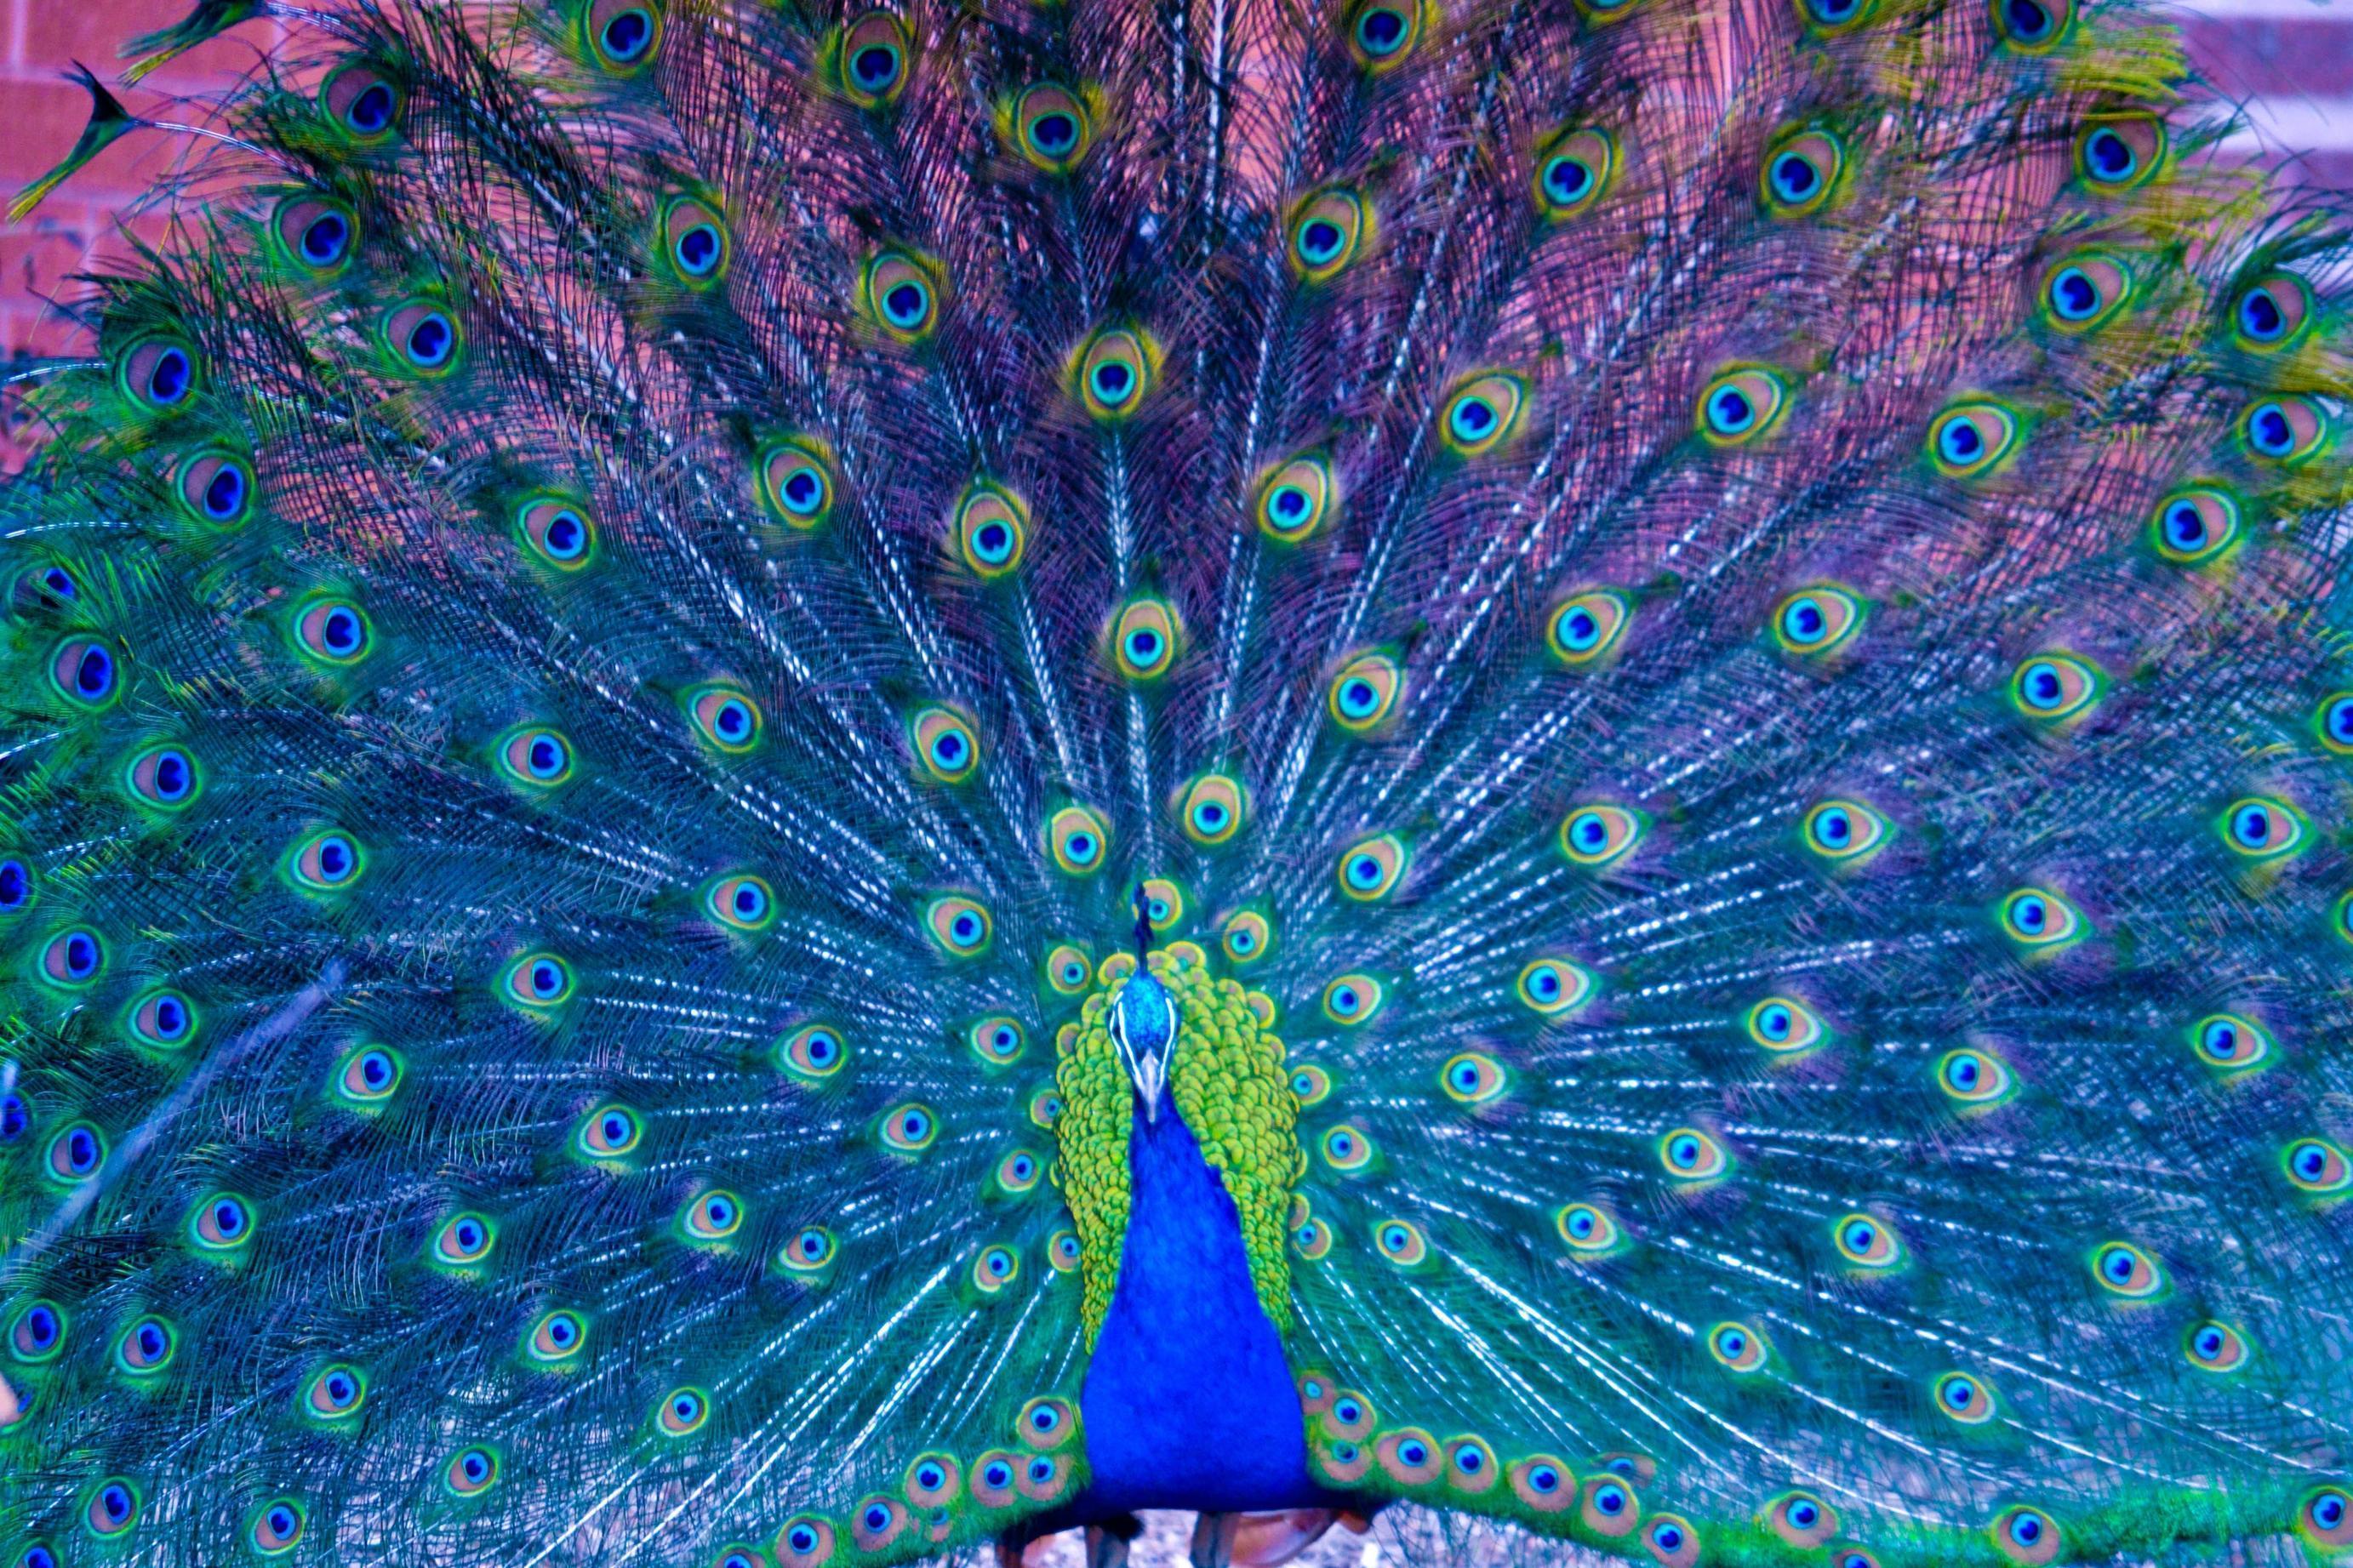 amazing peacock wallpaper original